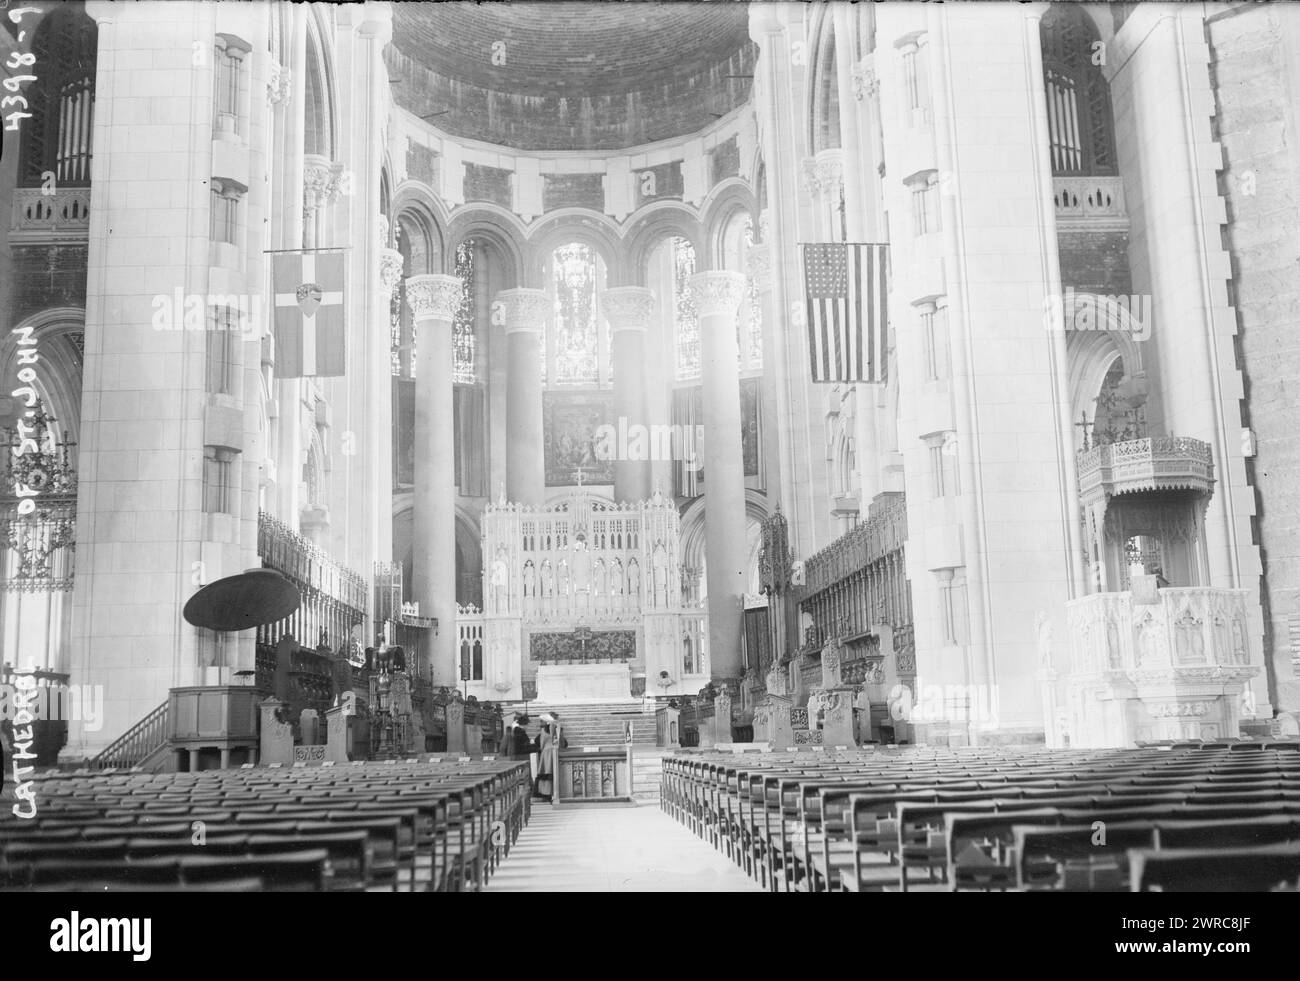 Kathedrale von St. John, Foto zeigt das Schiff, die Apsis und den Hochaltar der Kathedrale von St. John the Divine, New York City, zwischen ca. 1915 und ca. 1920, Glasnegative, 1 negativ: Glas Stockfoto